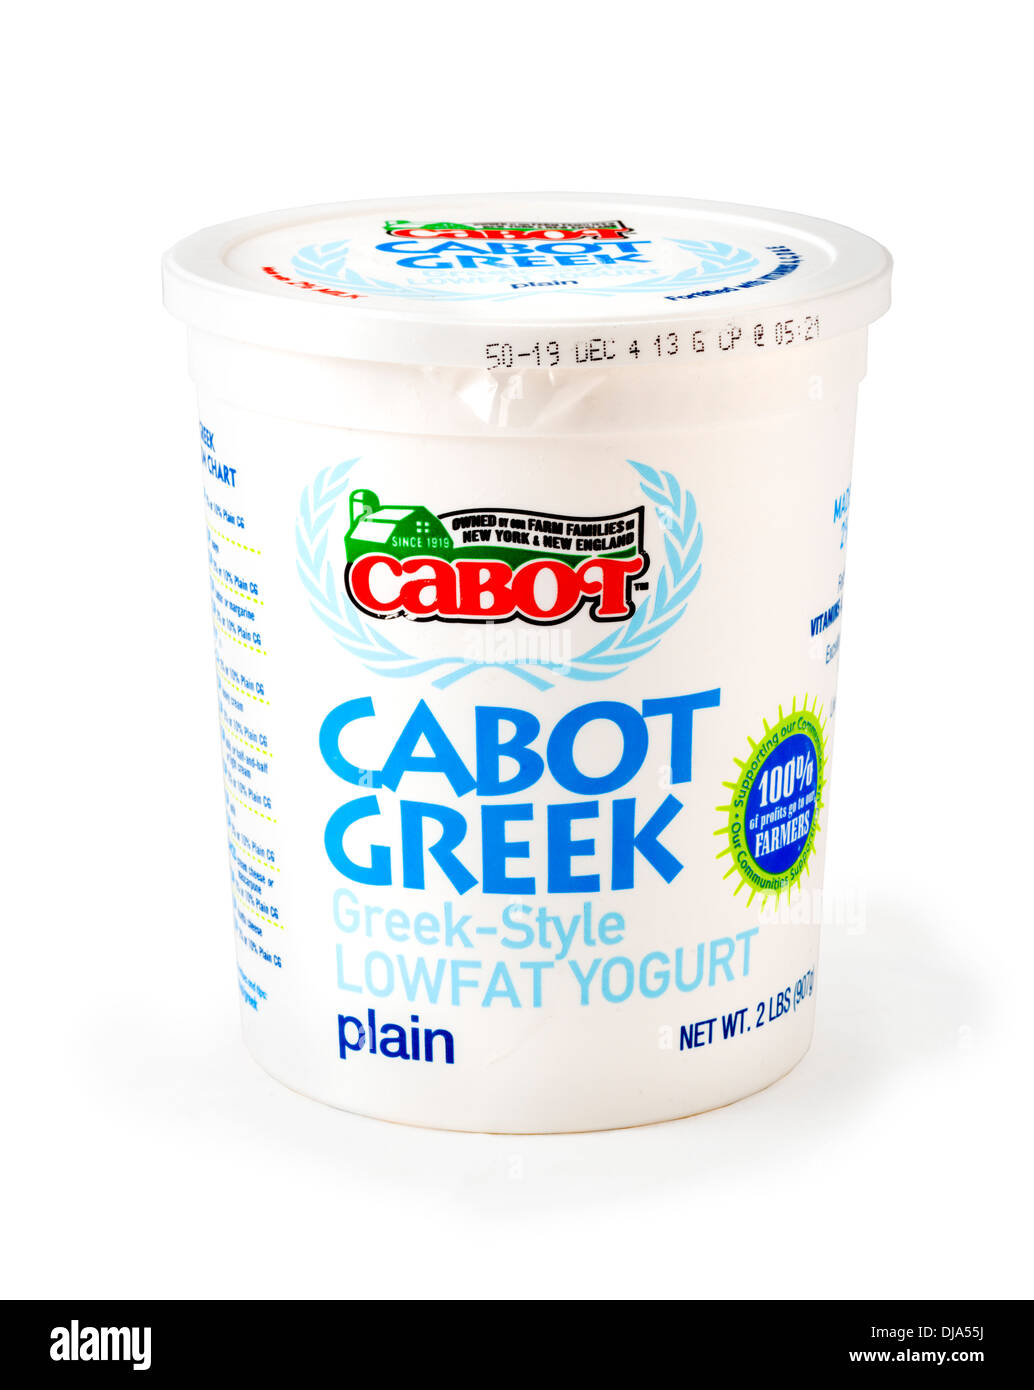 Cartone di Cabot pianura a basso contenuto di grassi in stile greco Yogurt, STATI UNITI D'AMERICA Foto Stock